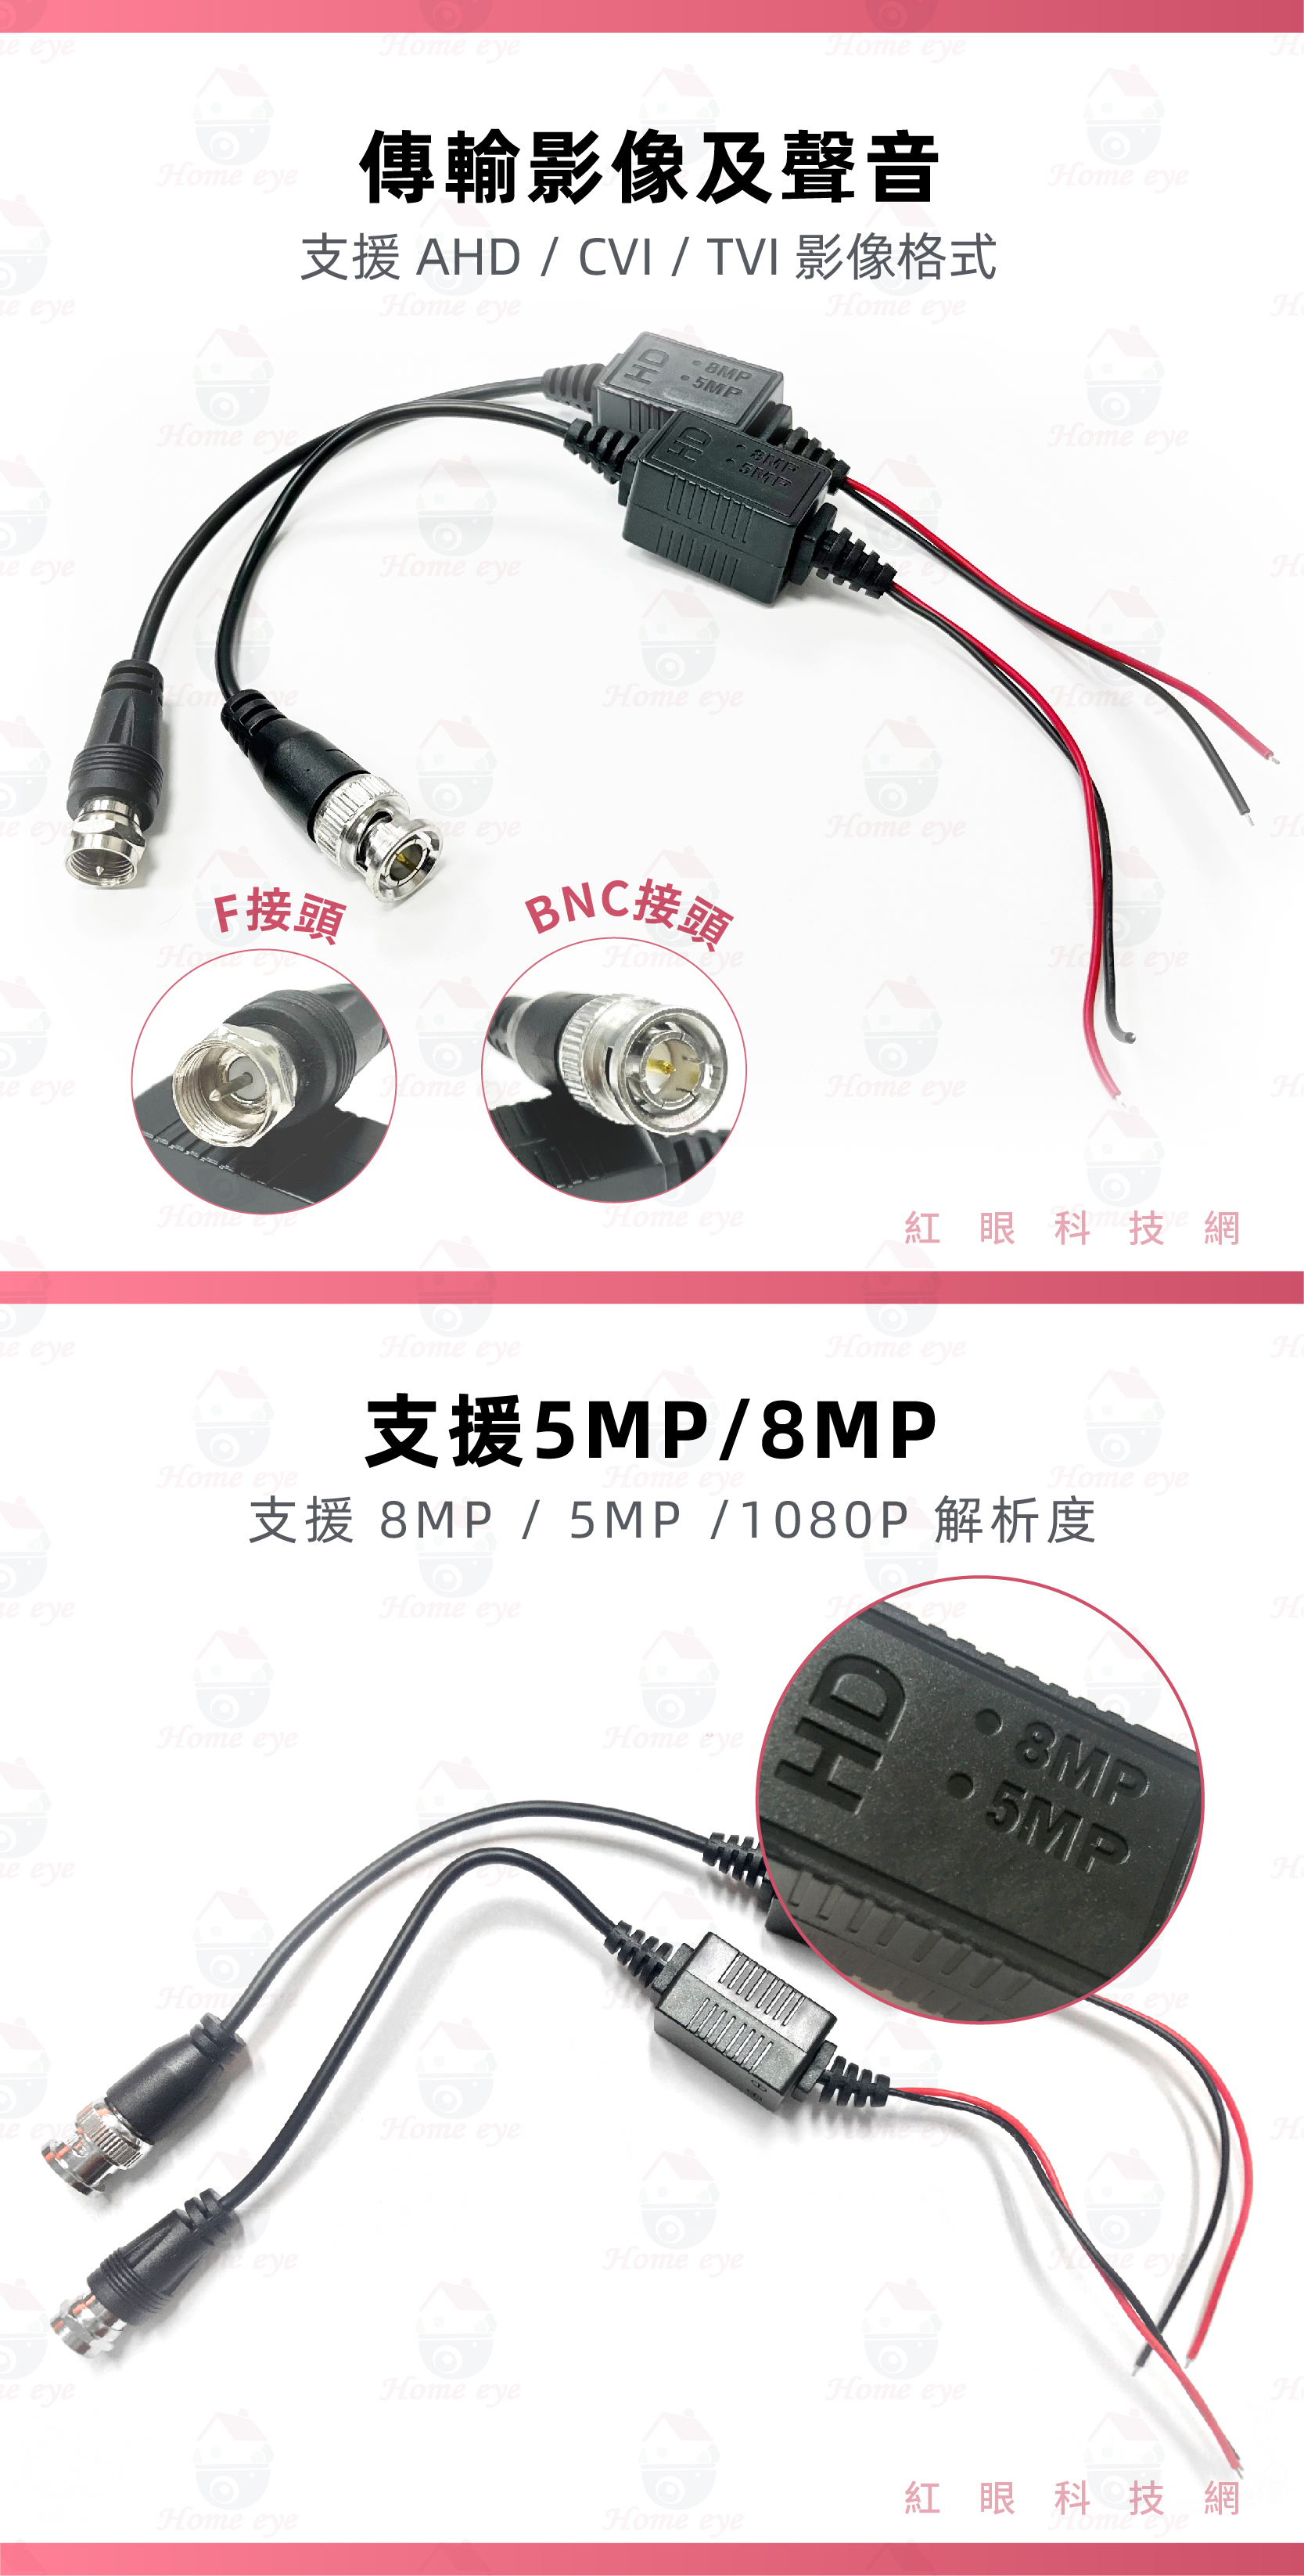 5MP雙絞線傳輸器 ★ 可將影像、聲音、控制信號都用此雙絞線傳輸器來轉換